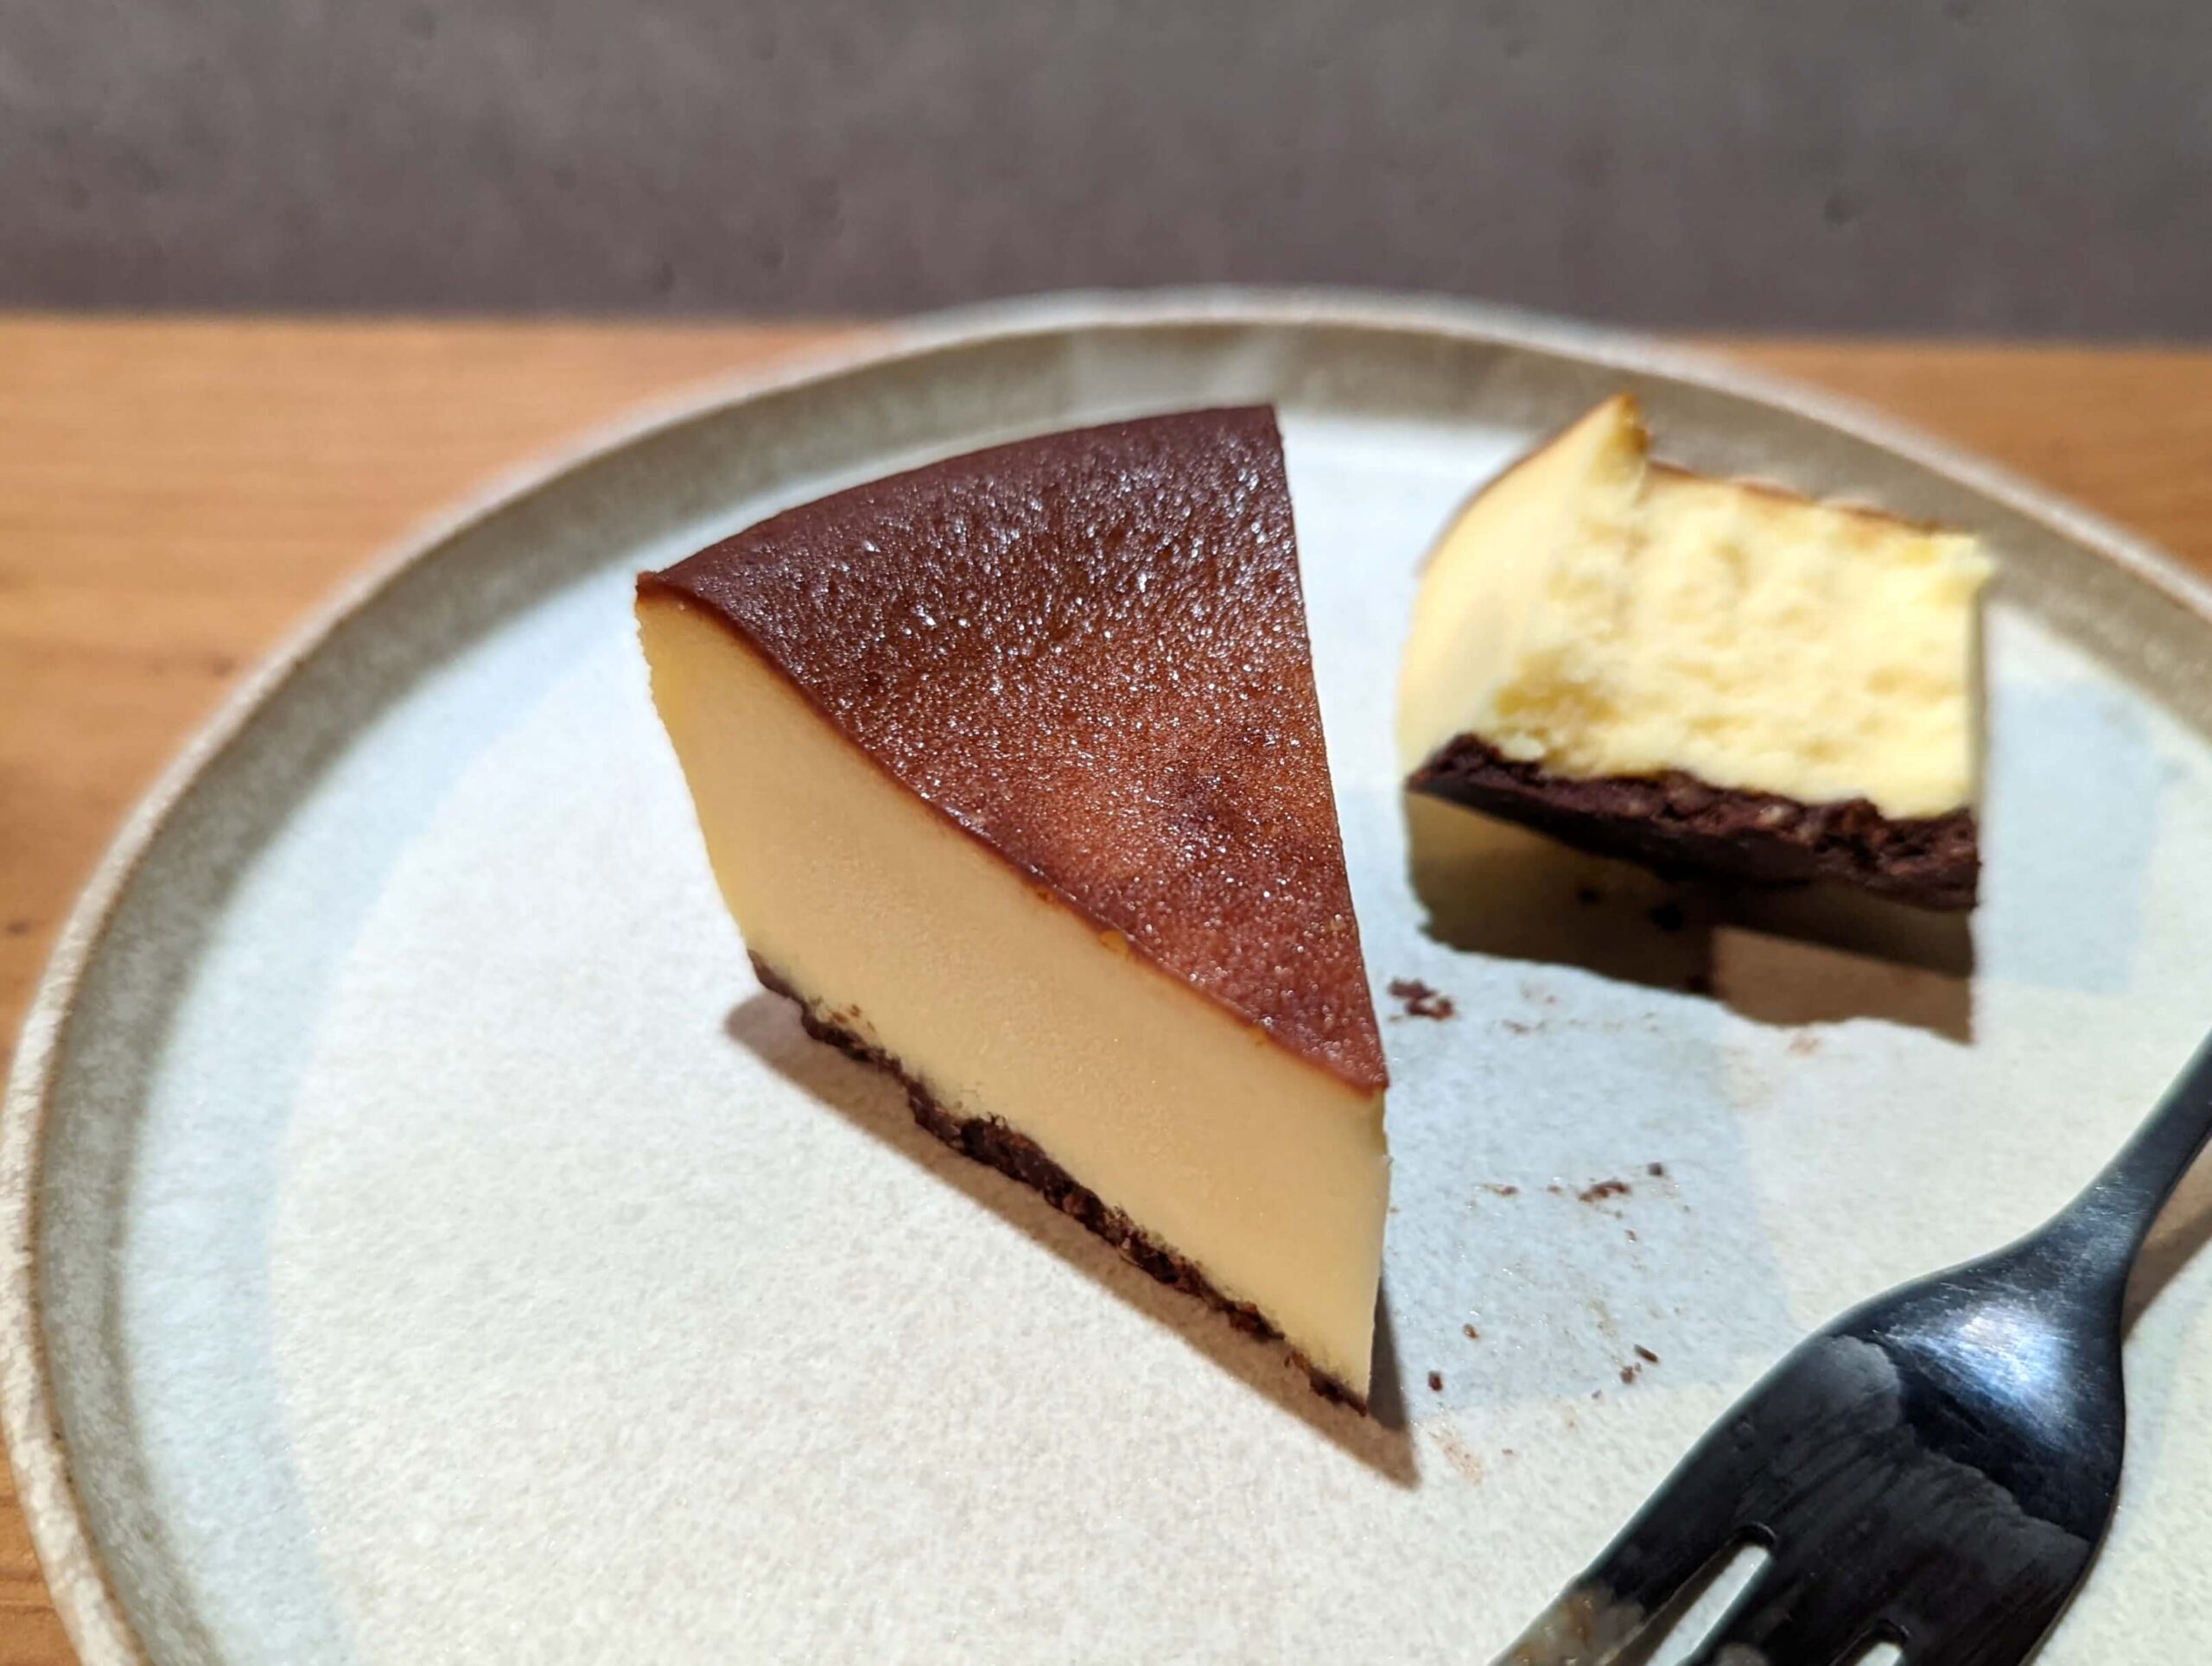 MYCAPTAIN CHEESE TOKYO(マイキャプテンチーズトーキョー)の冷凍のまま食べられるマイキャプテンチーズケーキ (15)